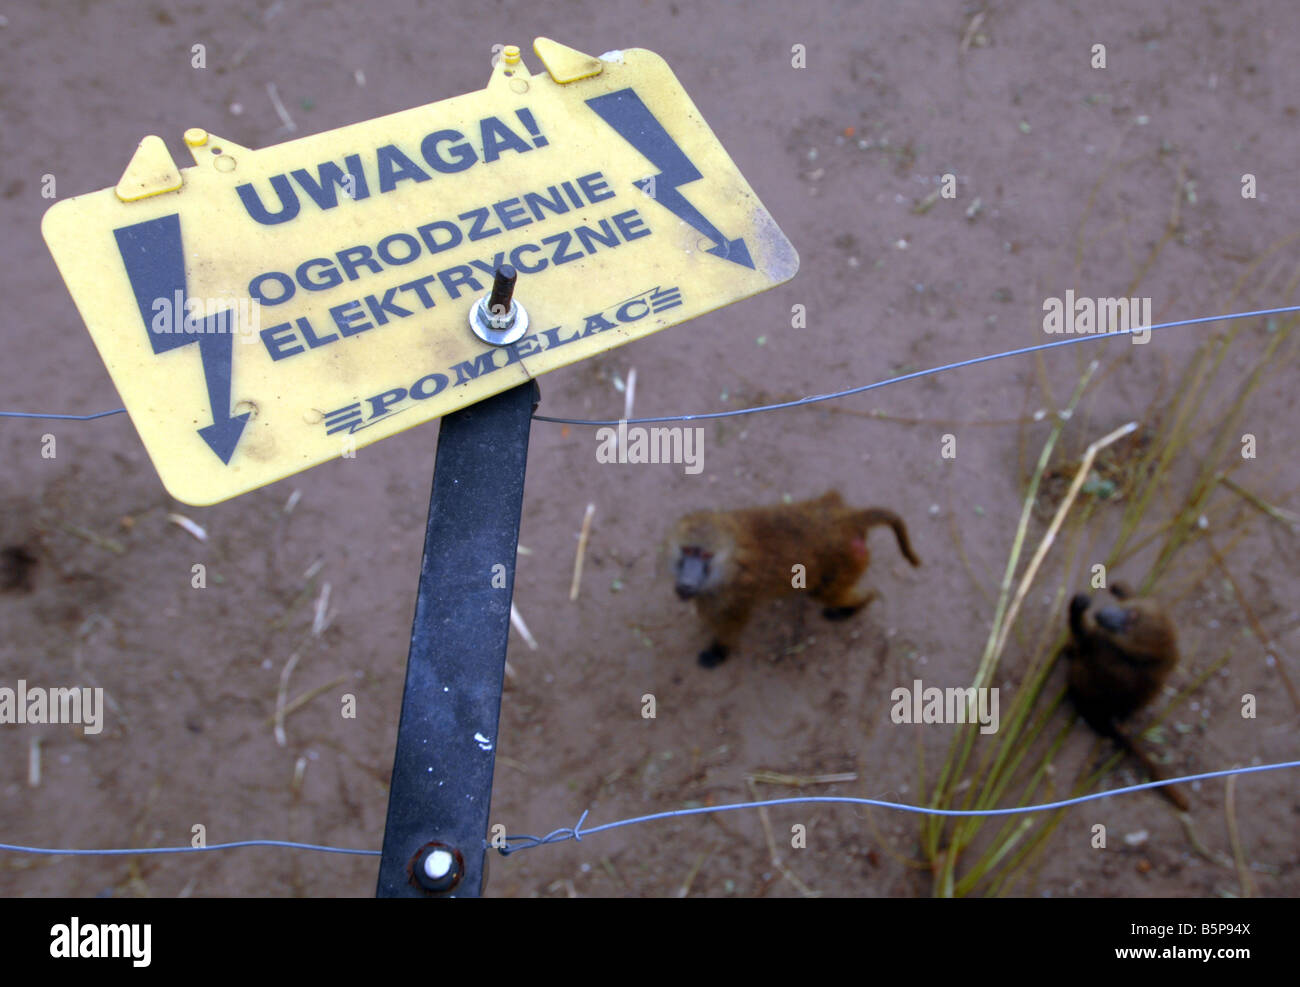 Cerco Eléctrico señal de advertencia sobre un babuino alojamiento Foto de stock